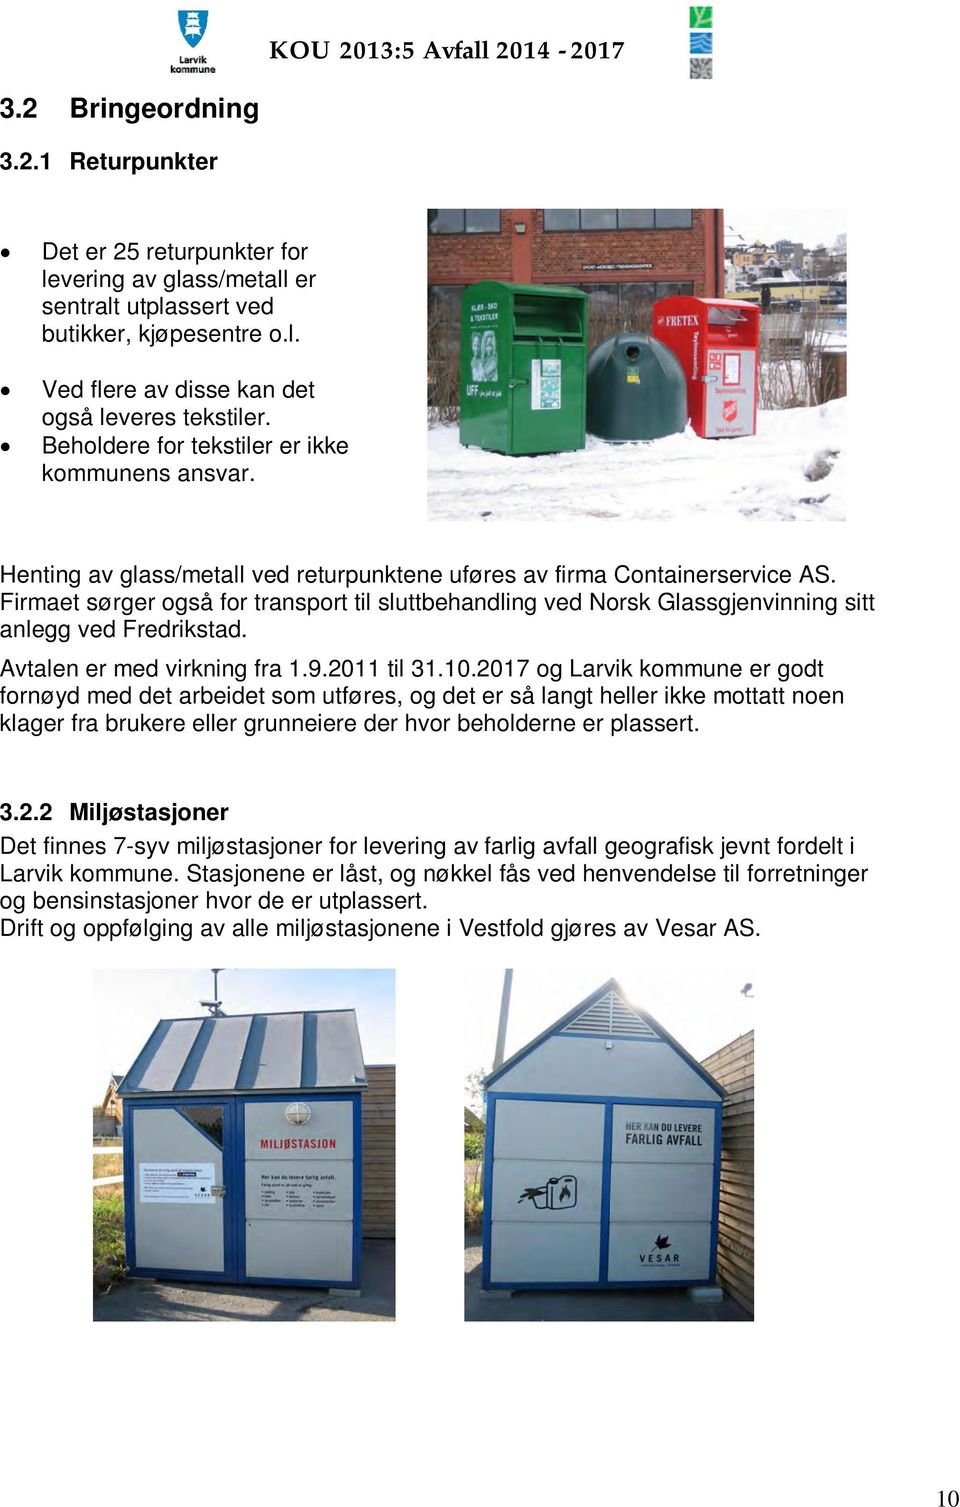 Firmaet sørger også for transport til sluttbehandling ved Norsk Glassgjenvinning sitt anlegg ved Fredrikstad. Avtalen er med virkning fra 1.9.2011 til 31.10.